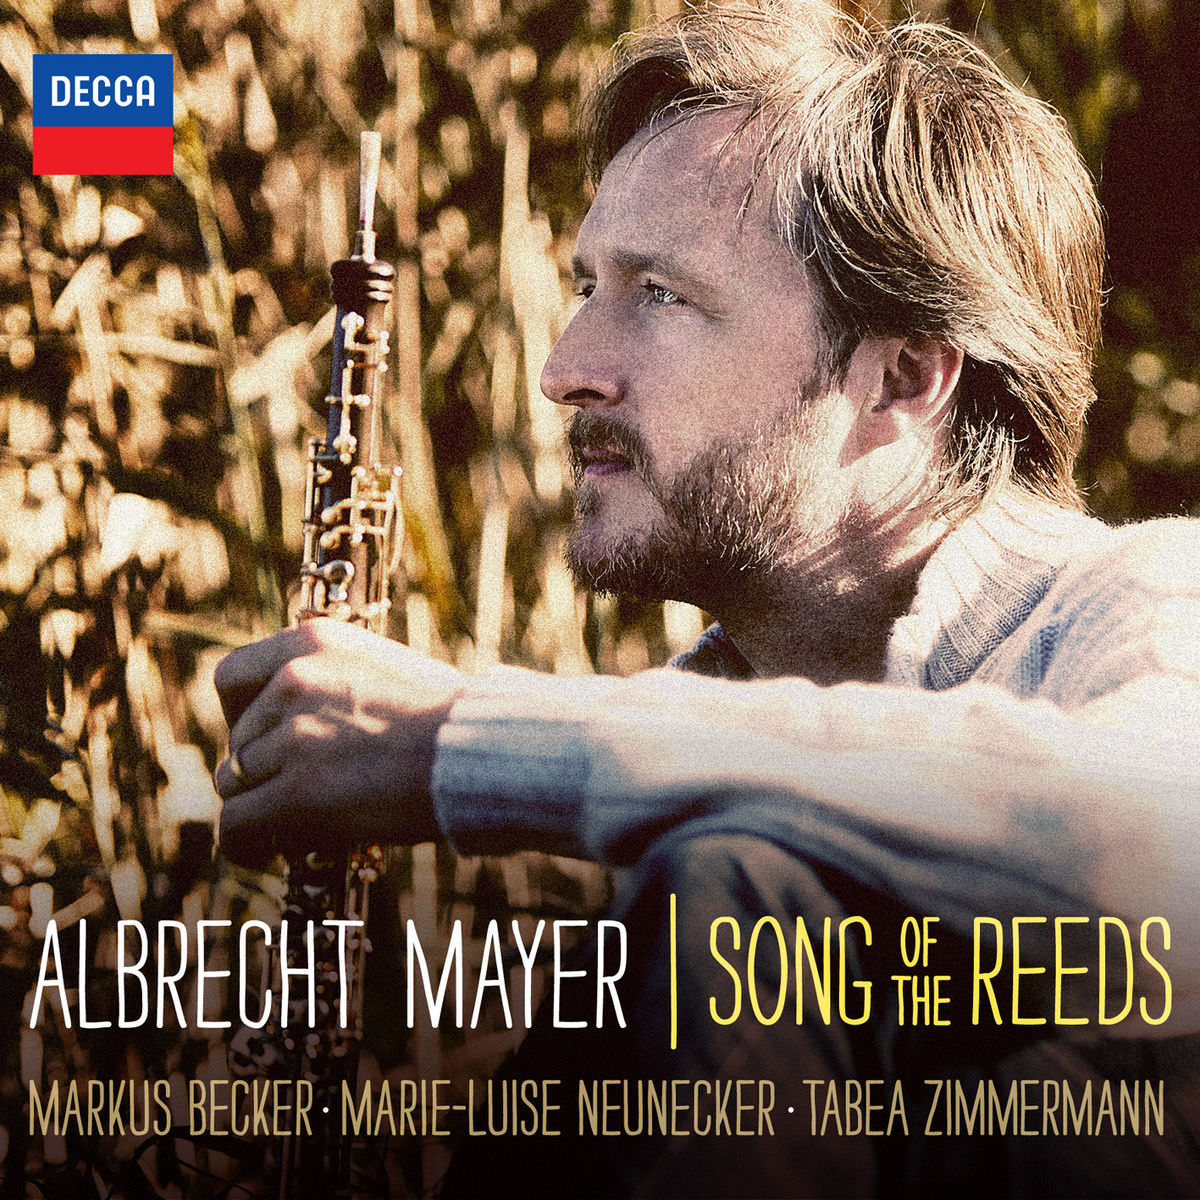 Albrecht Mayer – Albrecht Mayer Song of the Reeds (2017) [Qobuz FLAC 24bit/96kHz]